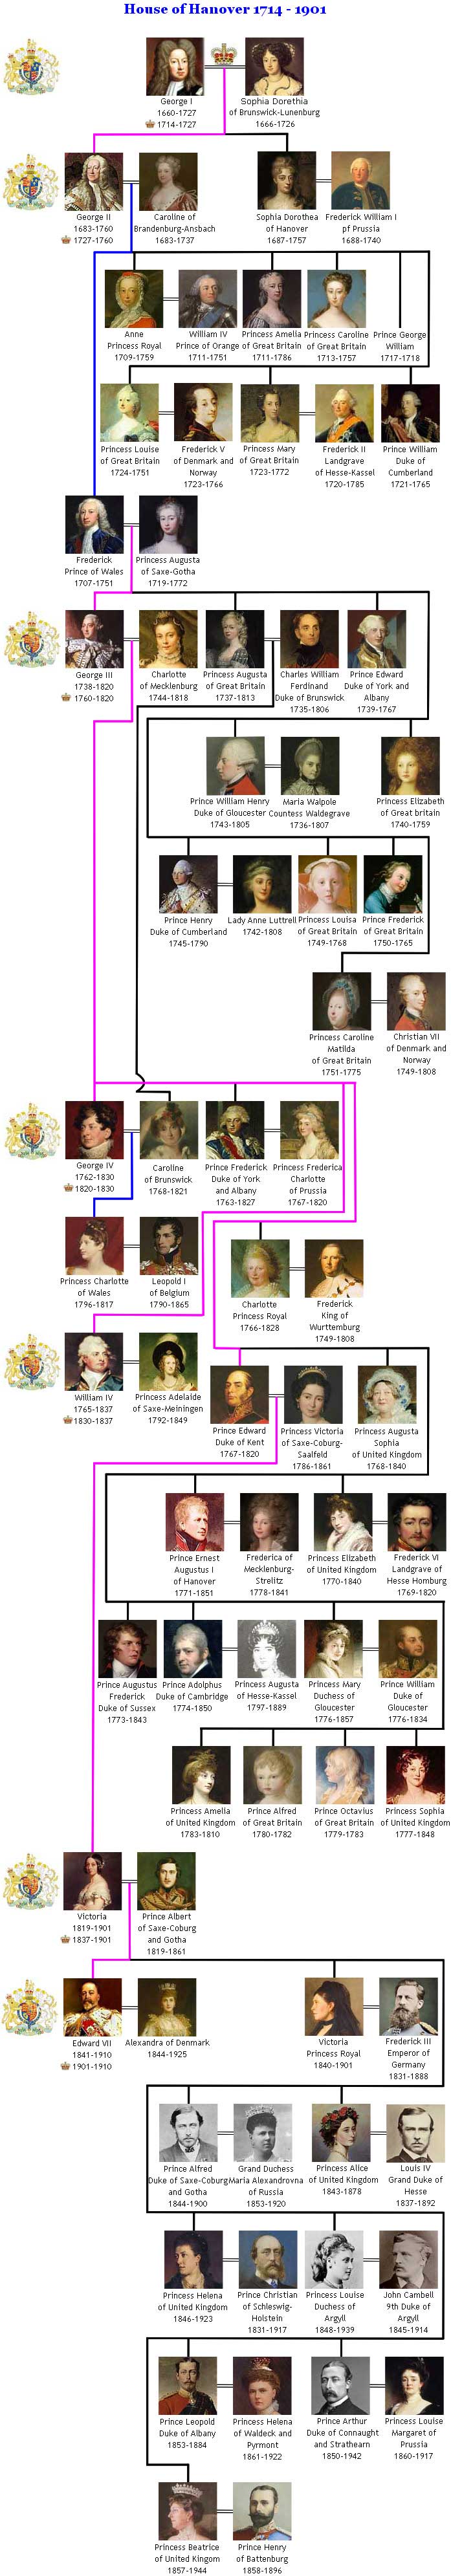 House of Hanover Royal Family Tree